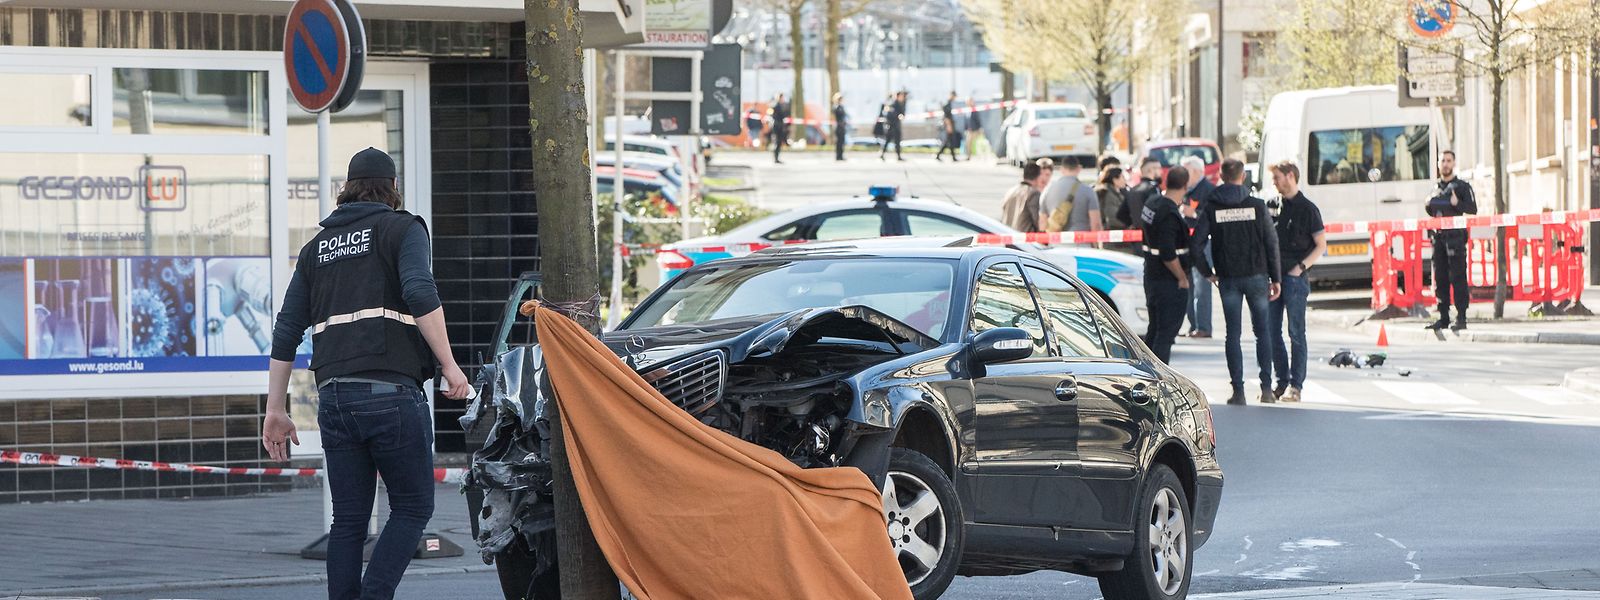 Am 11. April 2018 erschießt ein 22-jähriger Polizist in Bonneweg einen Autofahrer. Er spricht von Notwehr. Doch die Ermittlungen offenbaren Zweifel. 